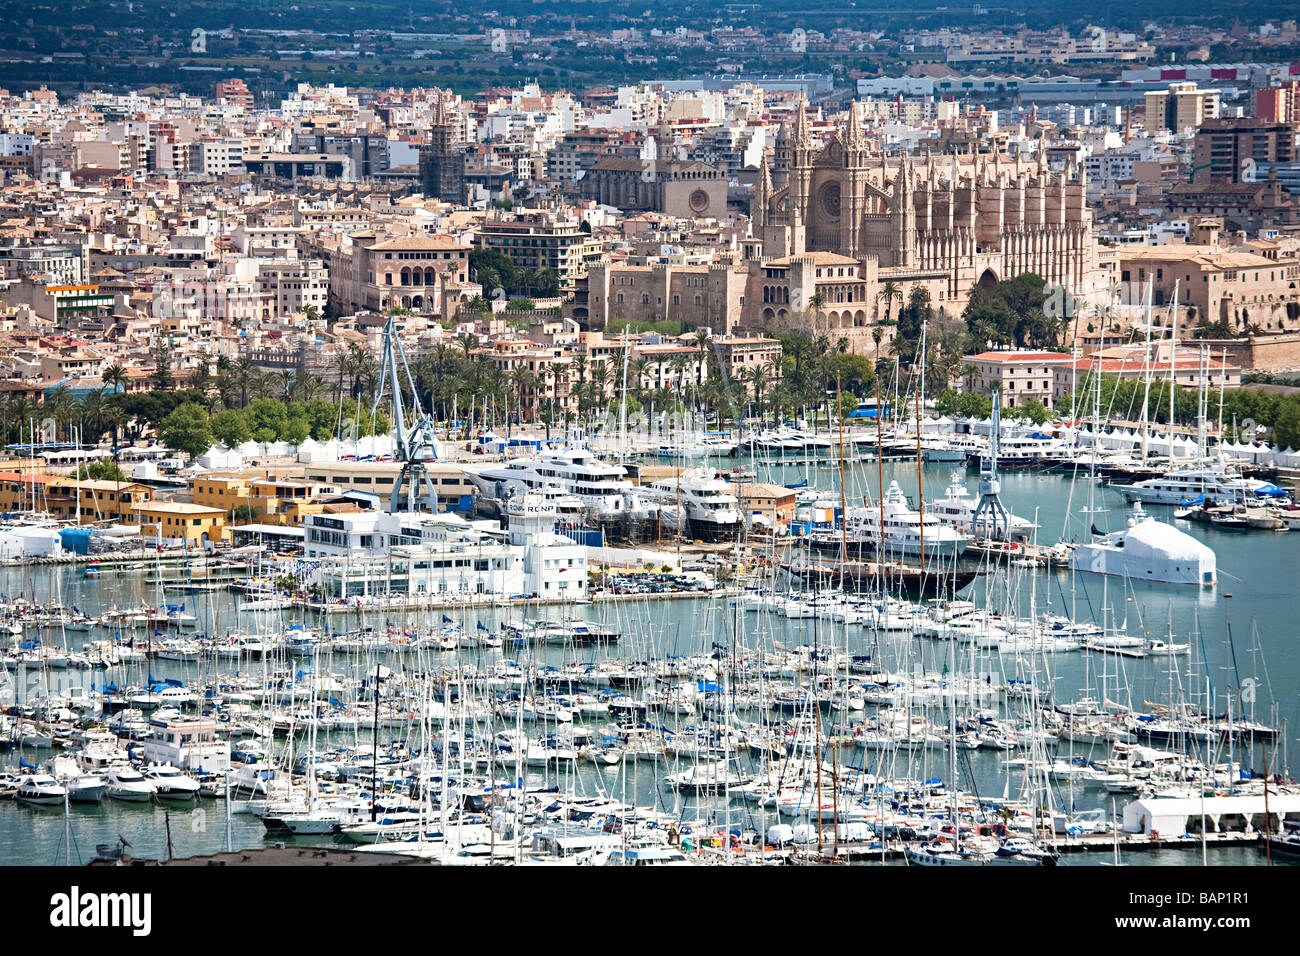 Marina and cathedral city of Palma Mallorca Spain Stock Photo - Alamy